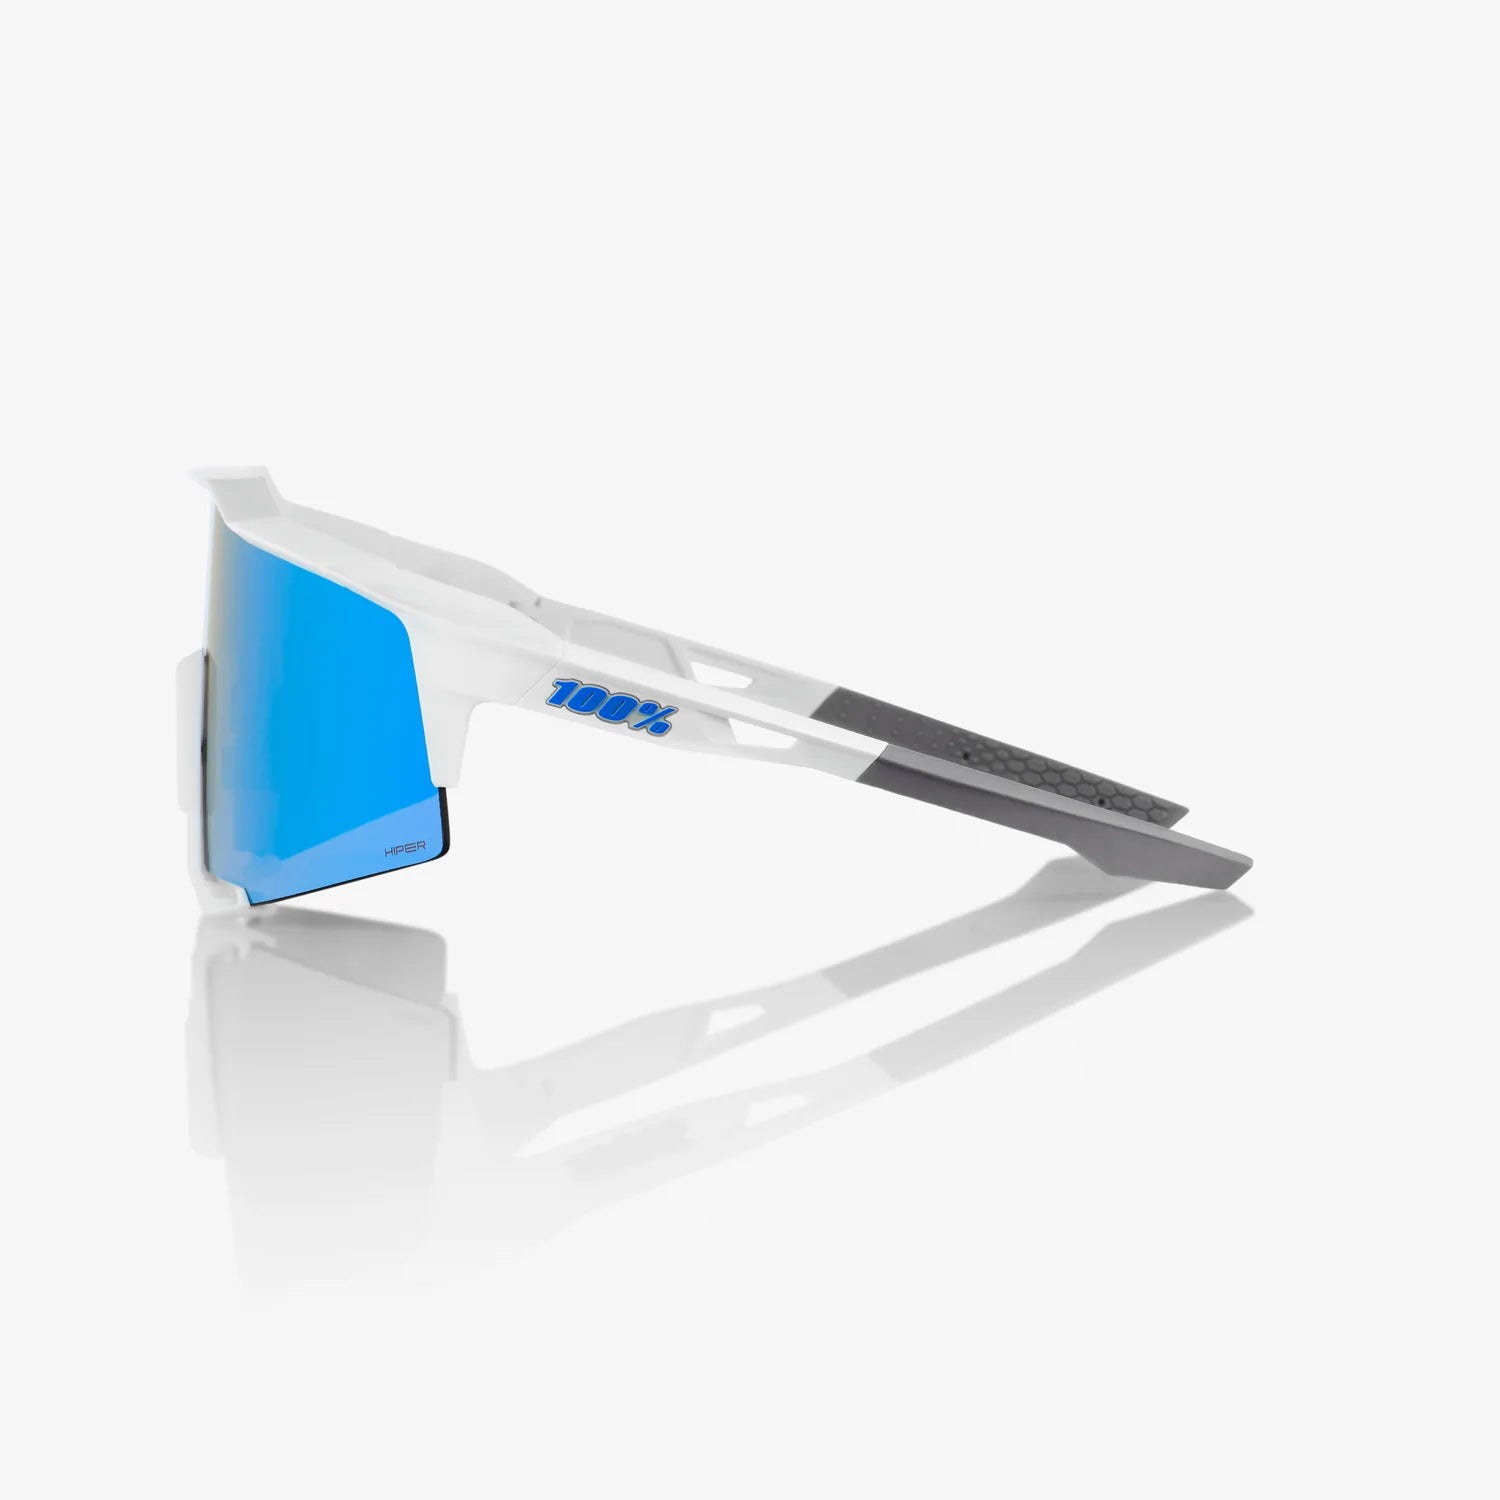 100% SPEEDCRAFT - Matte White - HiPER Blue Multilayer Mirror Lens